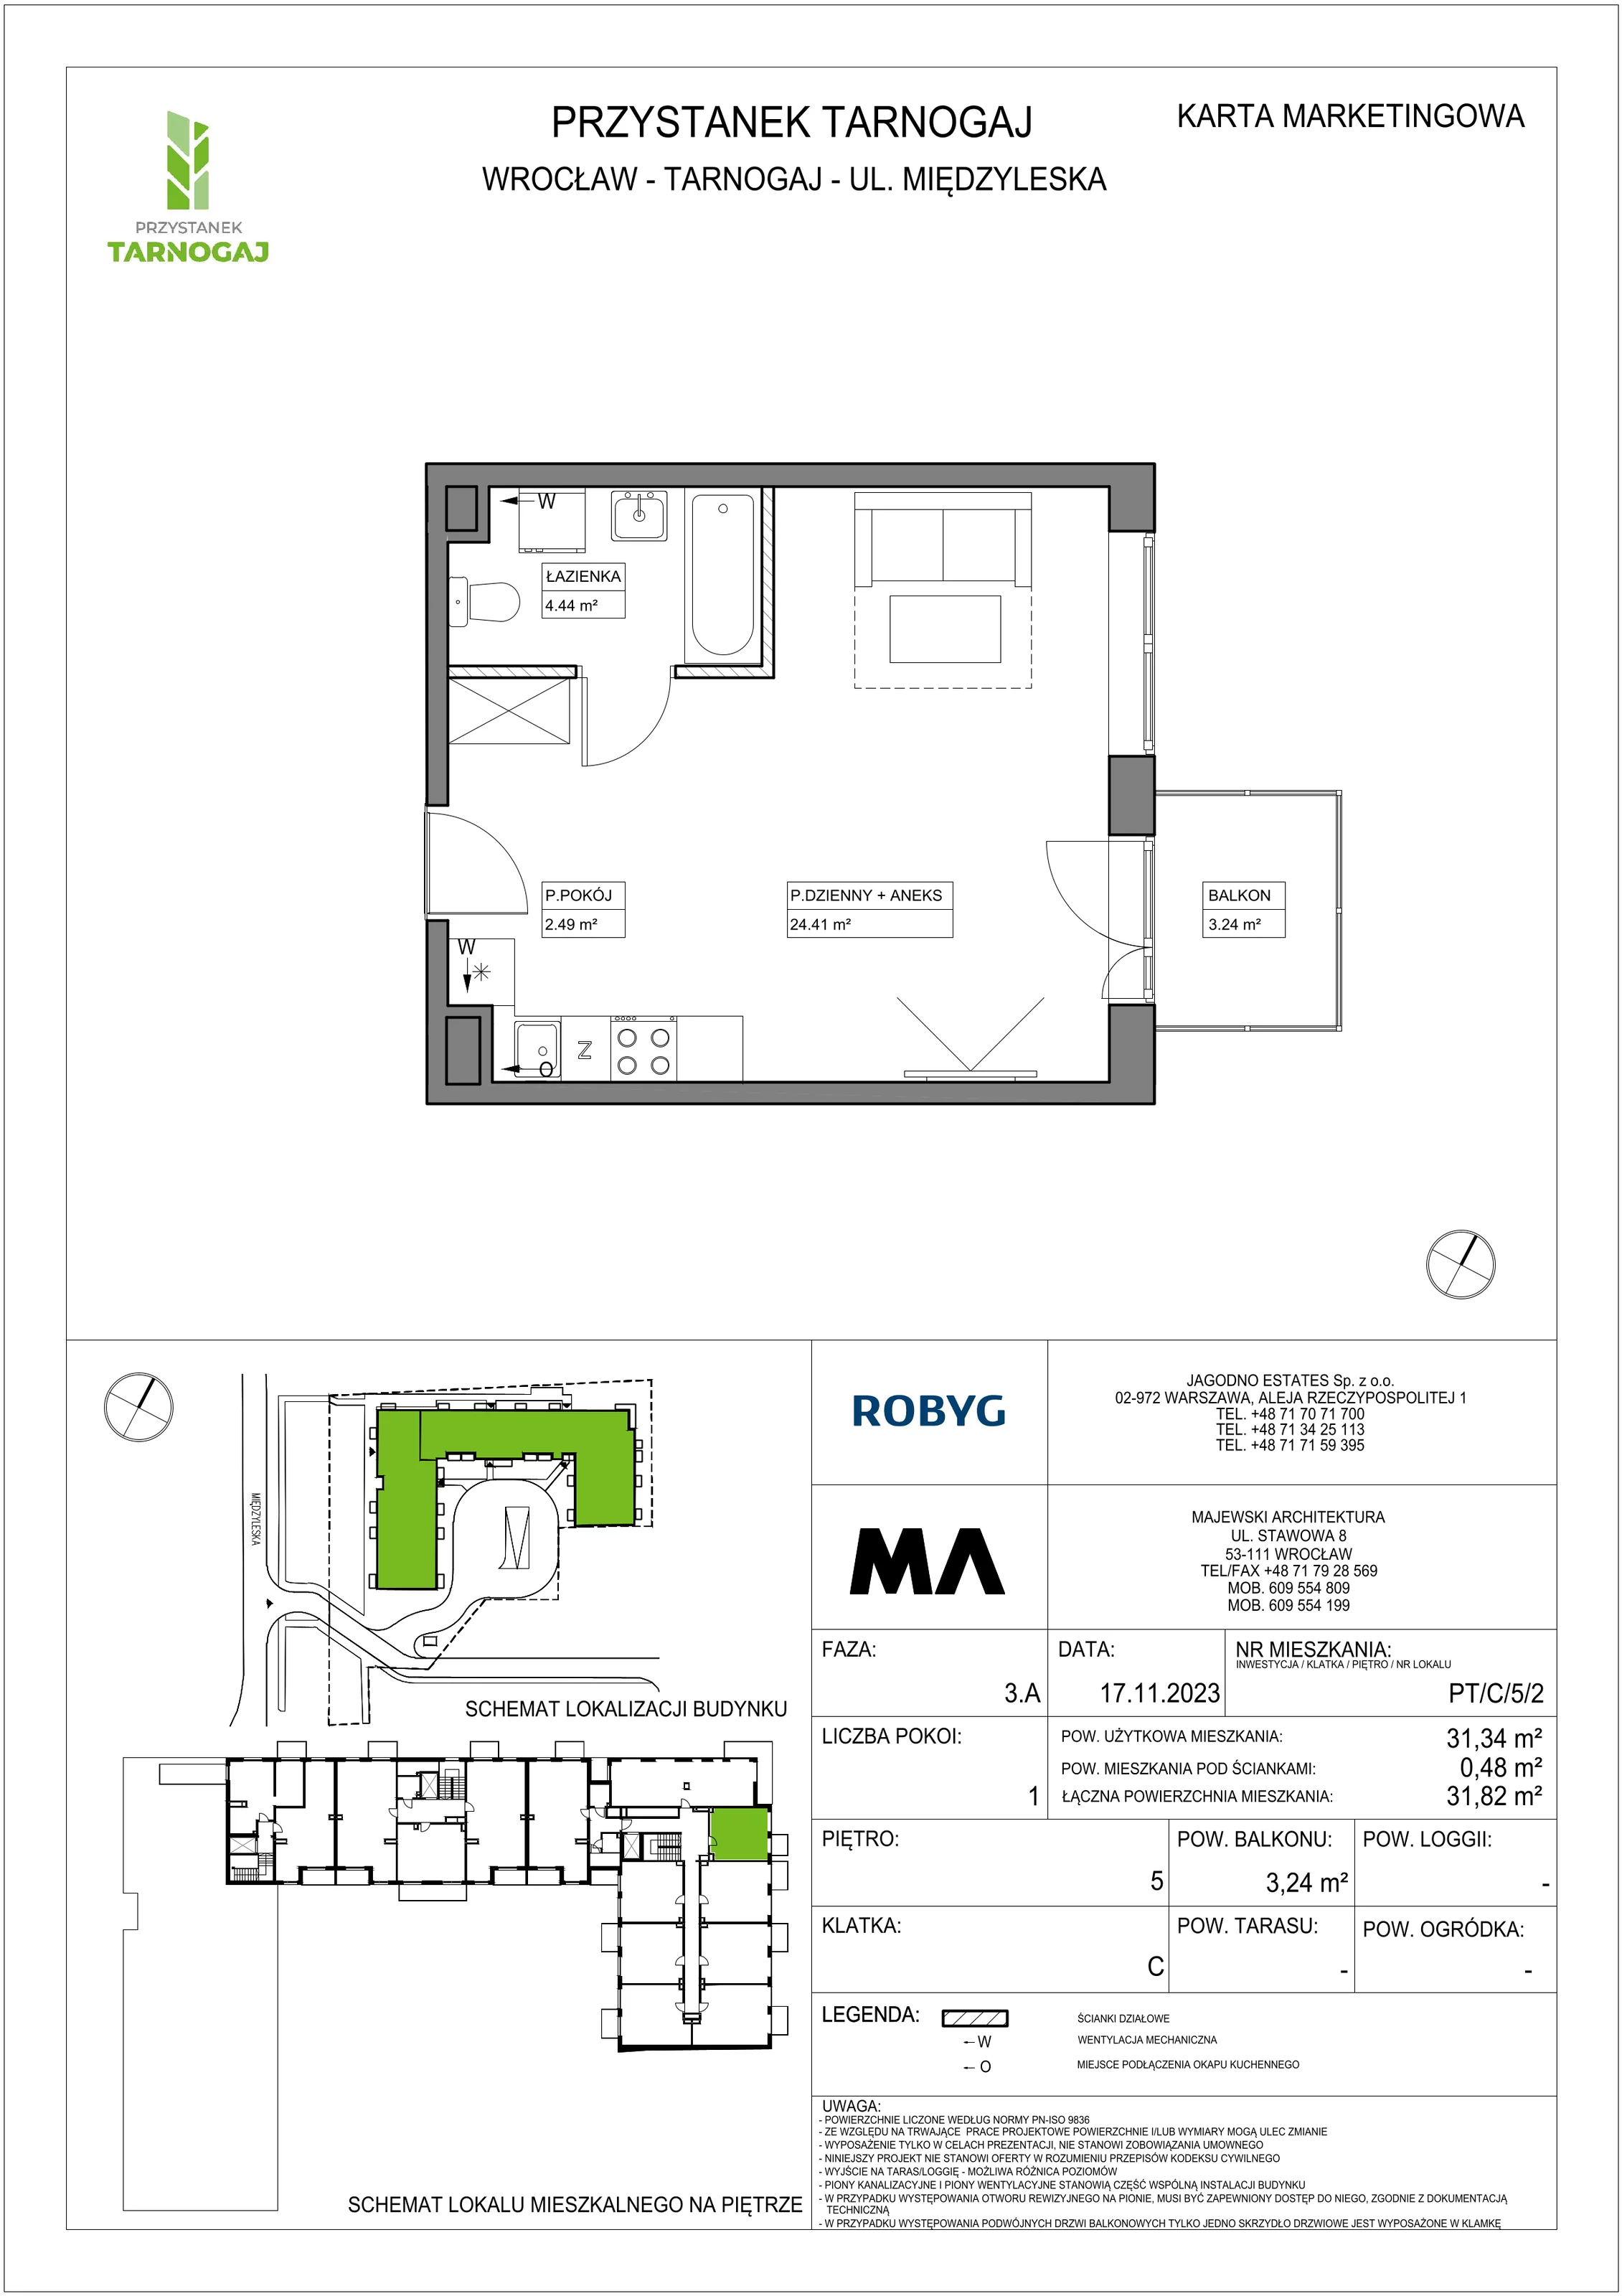 Mieszkanie 31,34 m², piętro 5, oferta nr PT/C/5/2, Przystanek Tarnogaj, Wrocław, Tarnogaj, Krzyki, ul. Międzyleska / Gazowa